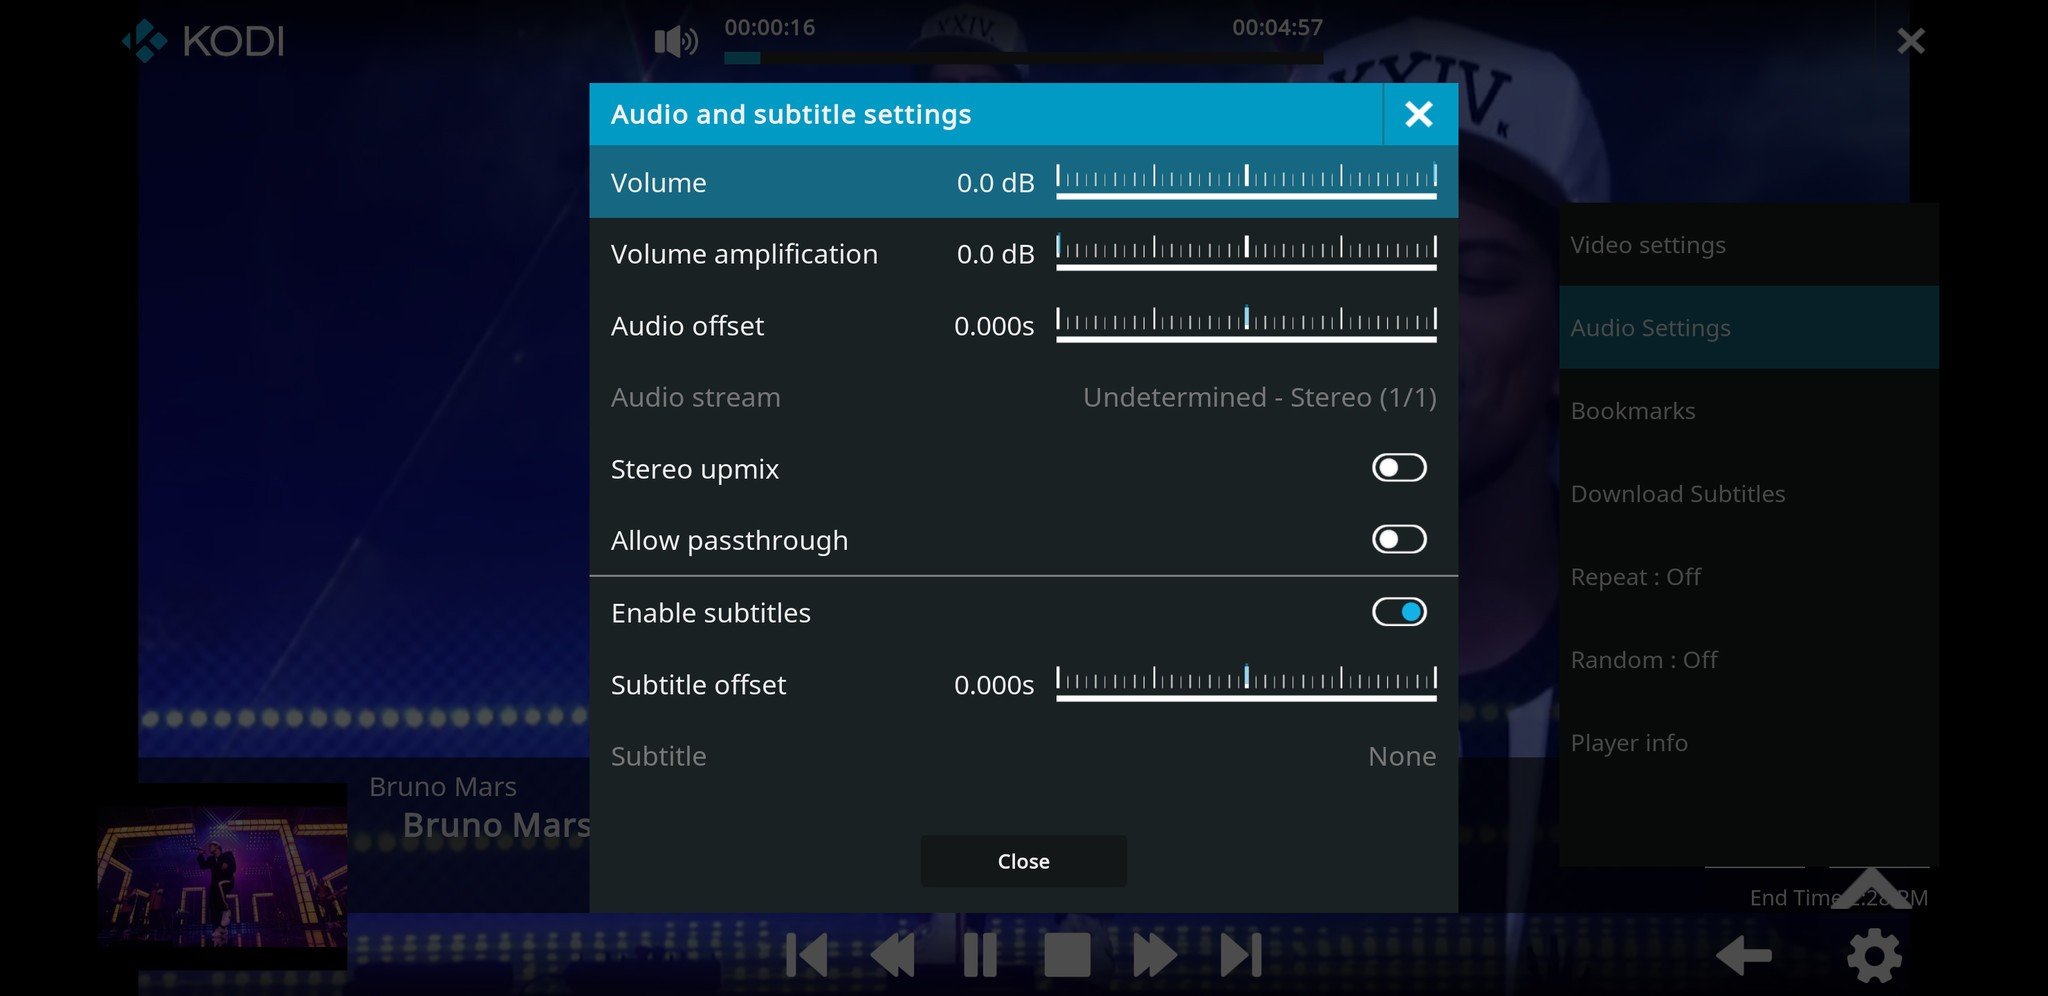 kodi-audio-settings-screen.jpg?itok=L_Uz